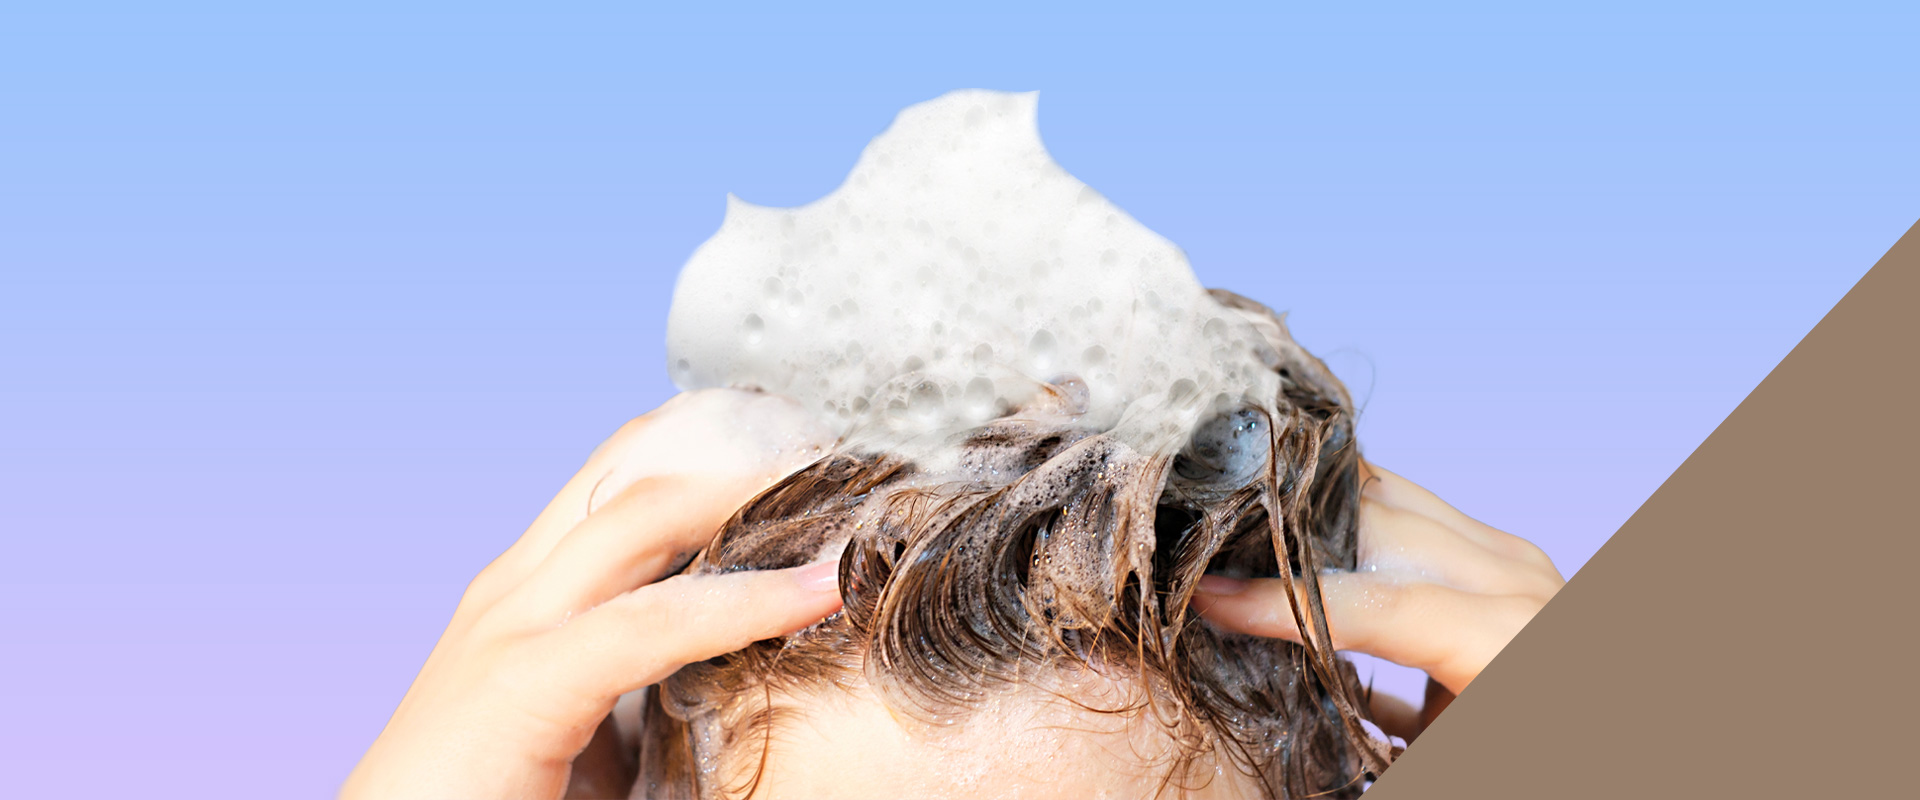 ノンシリコンシャンプー きめ細かな泡が、頭皮も髪もすっきり洗い上げる